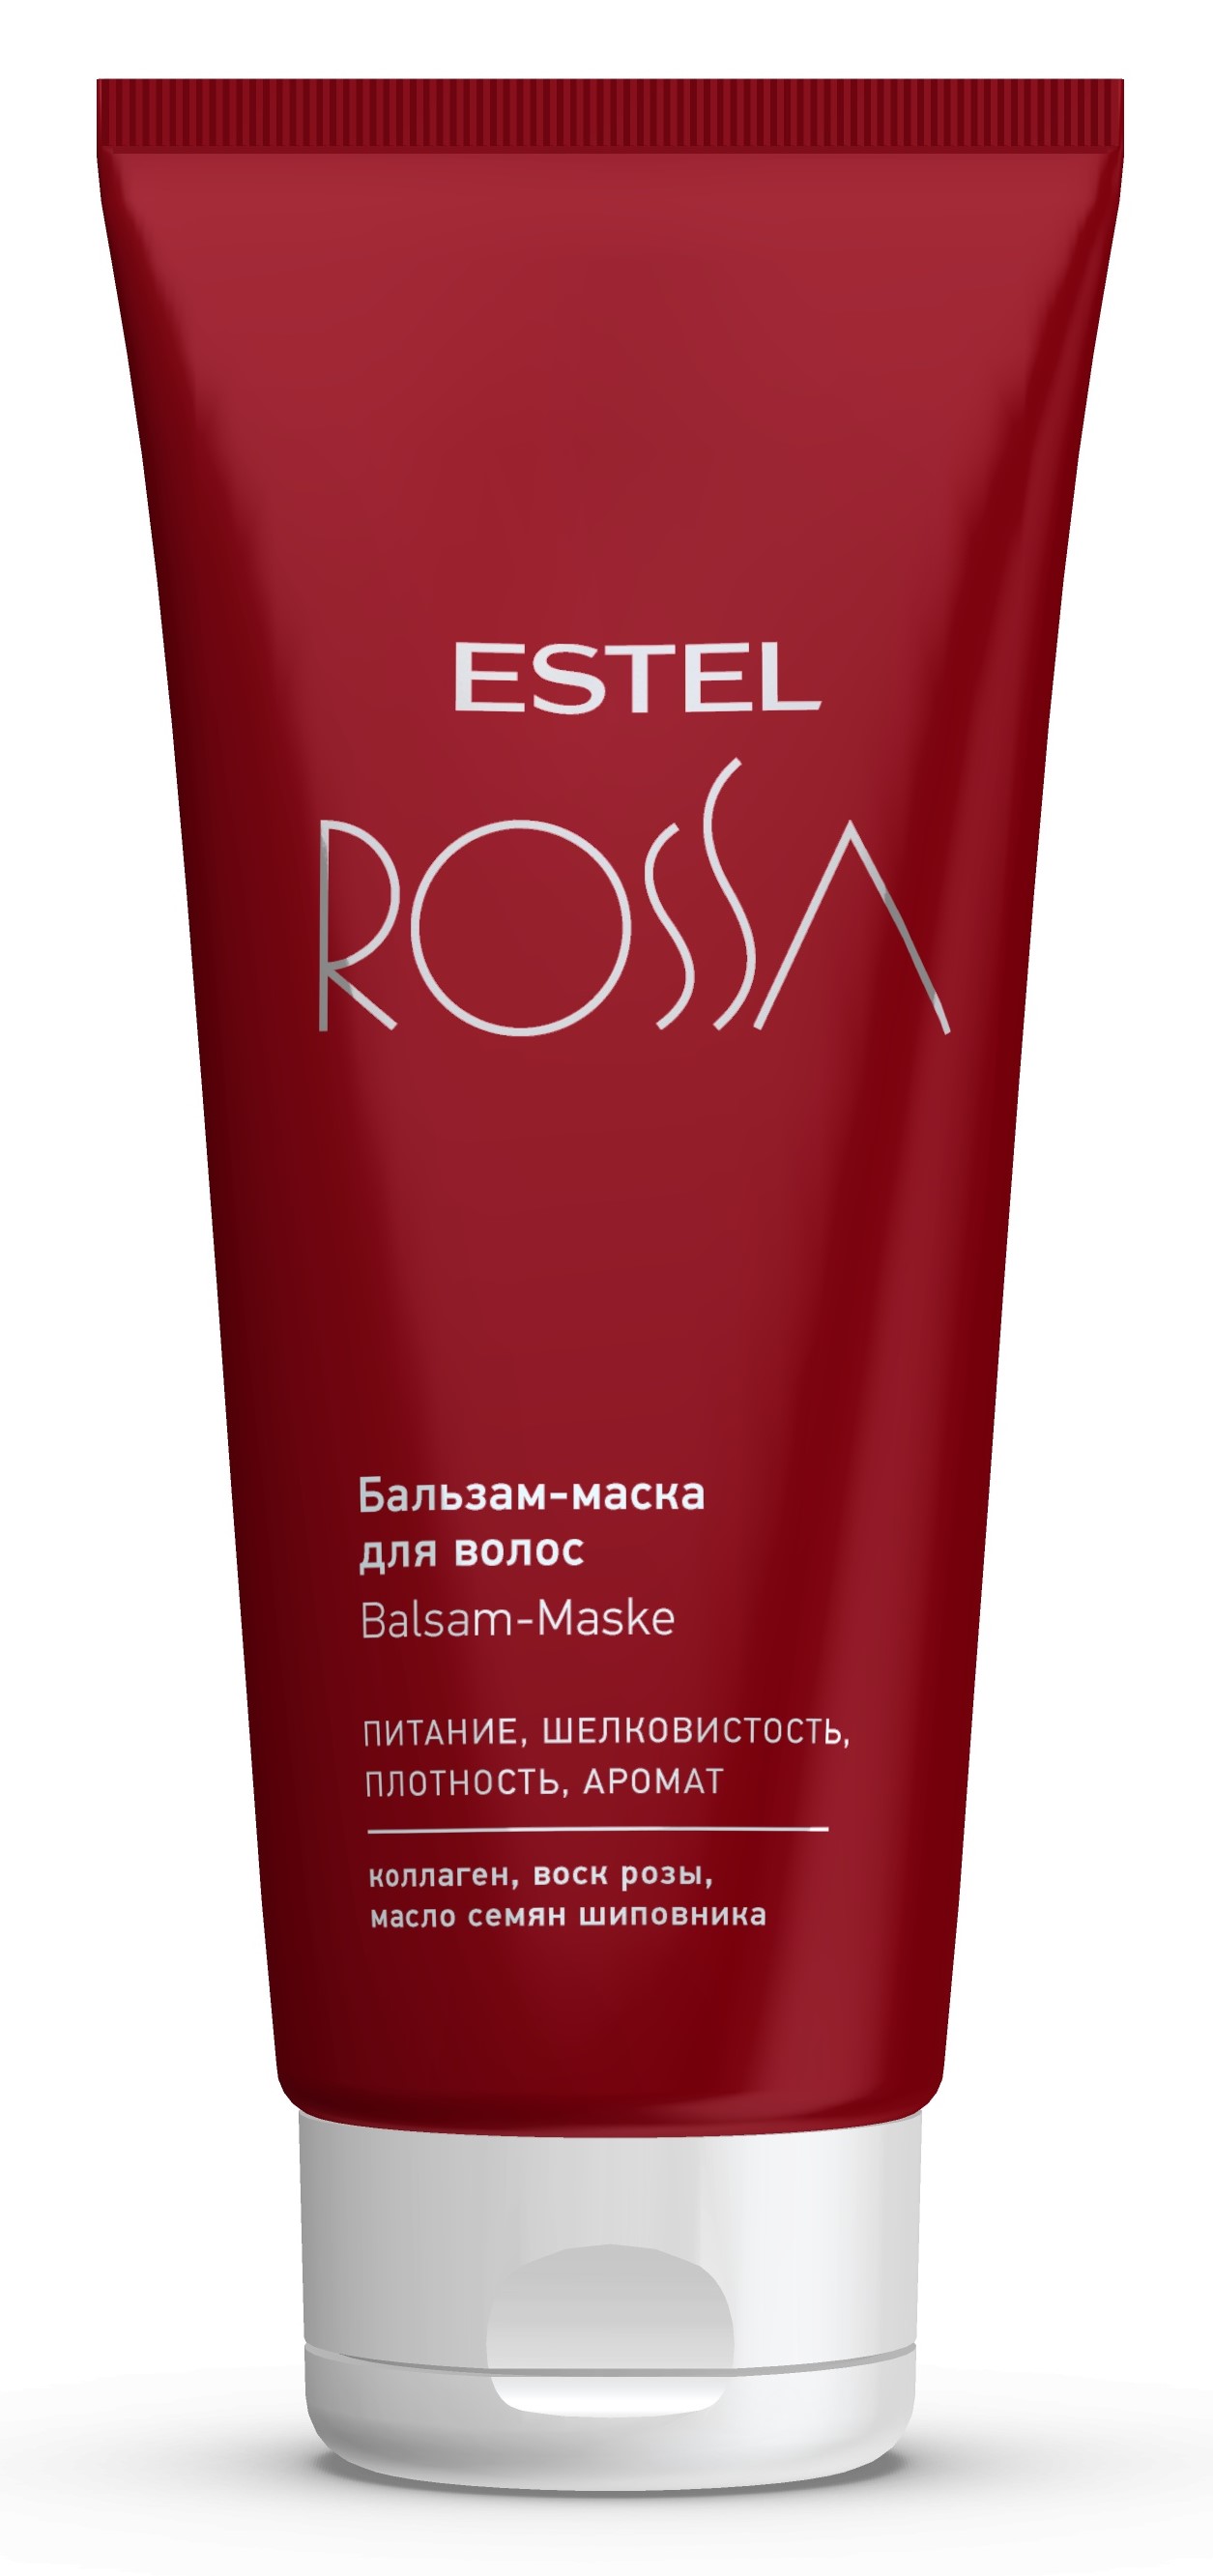 Estel Бальзам-маска для волос, 200 мл (Estel, Rossa) estel набор rossa